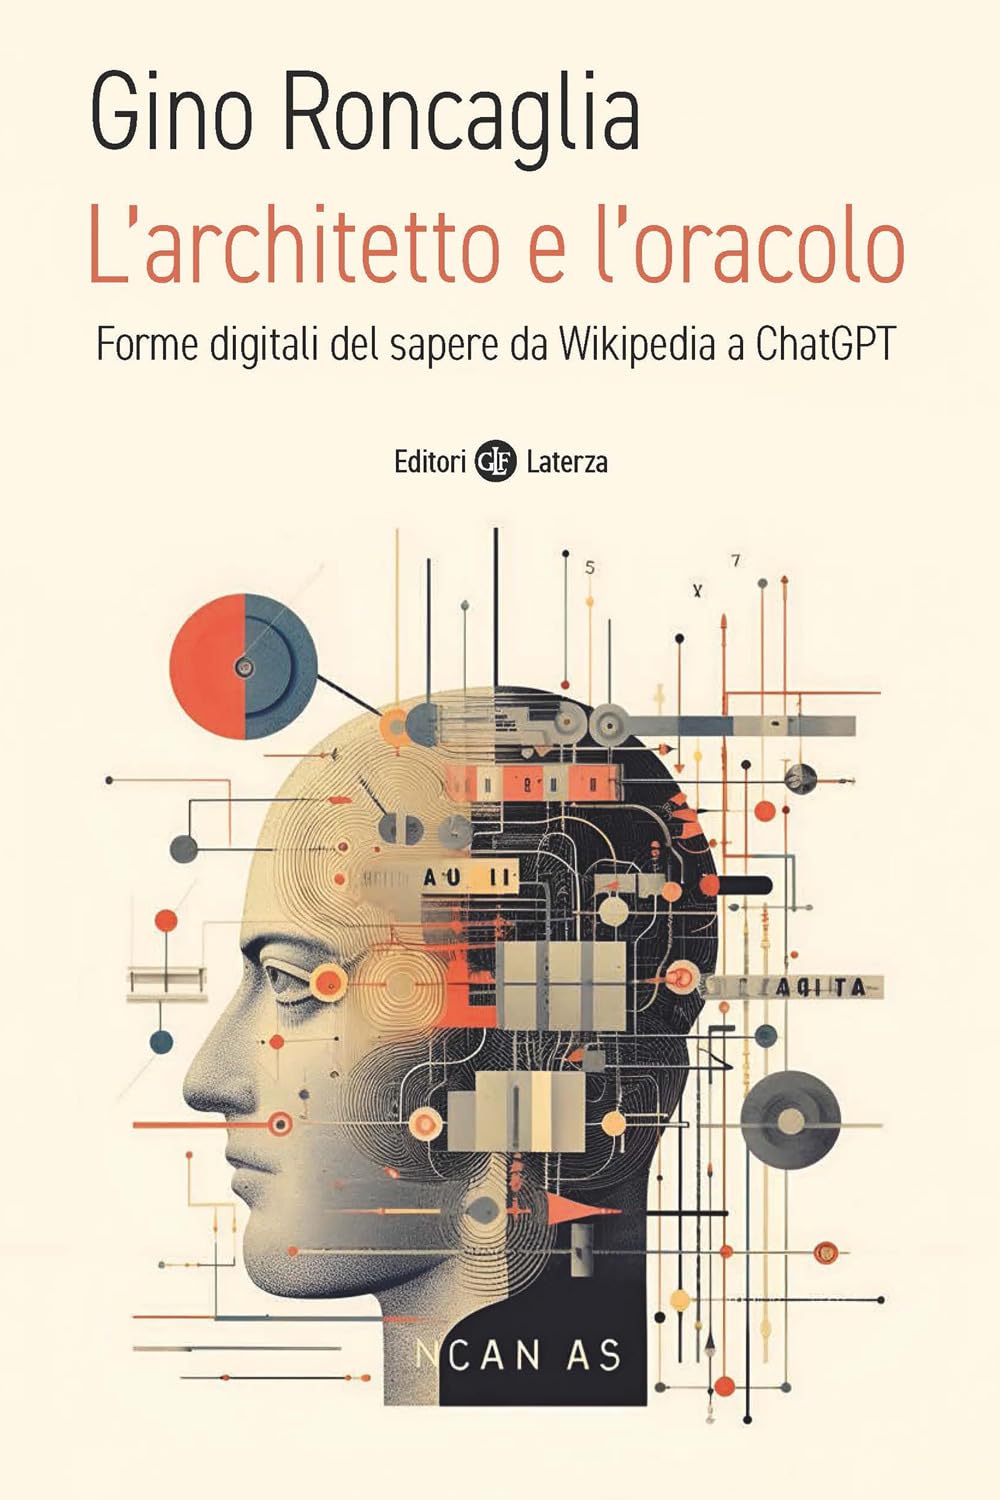 Libro: L'architetto e l'oracolo. Forme digitali del sapere da Wikipedia a ChatGPT, Gino Roncaglia, 2023